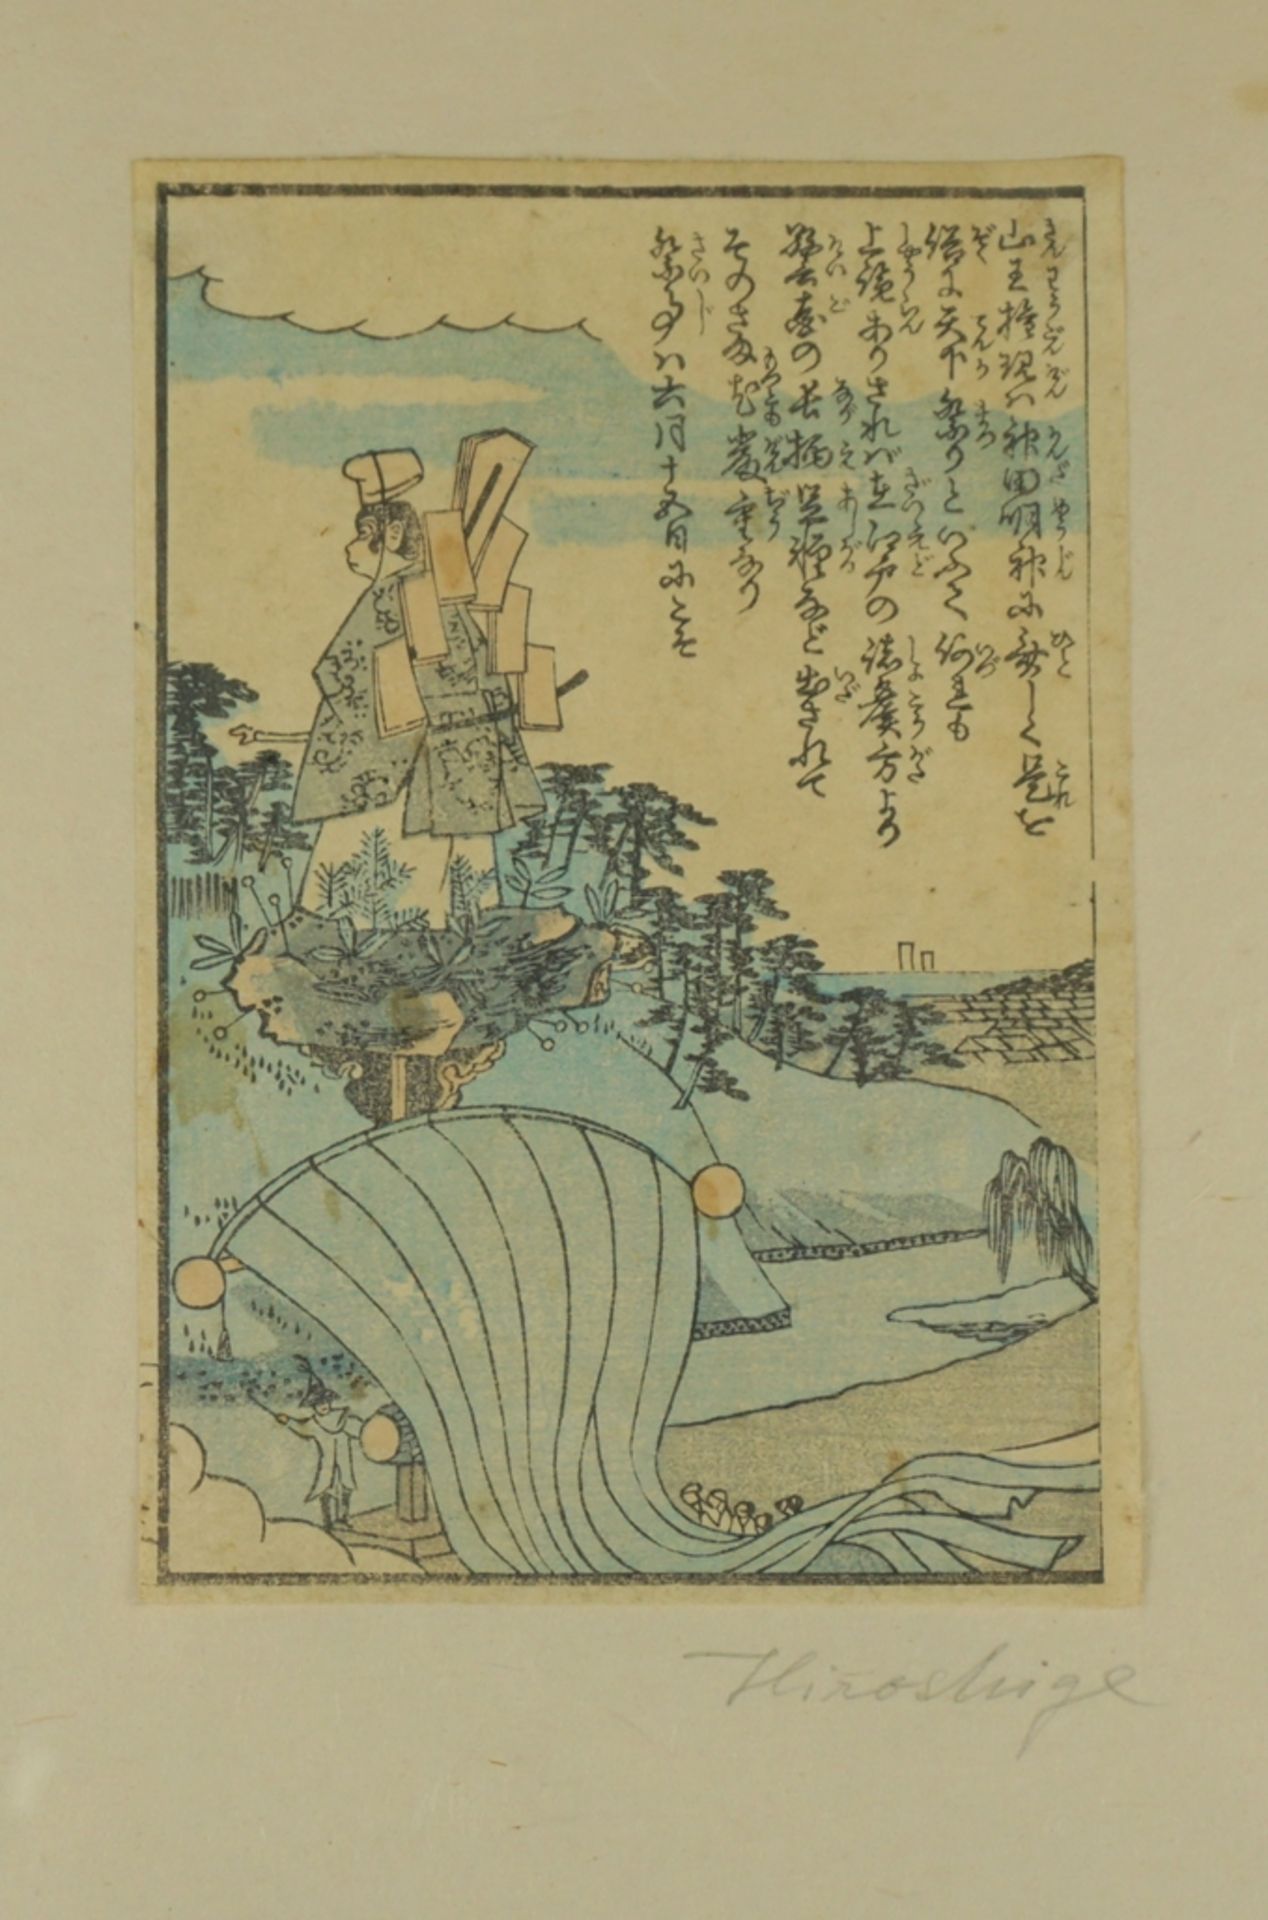 bezeichn. "Hiroshige", 19. Jh., Farbholzschnitt